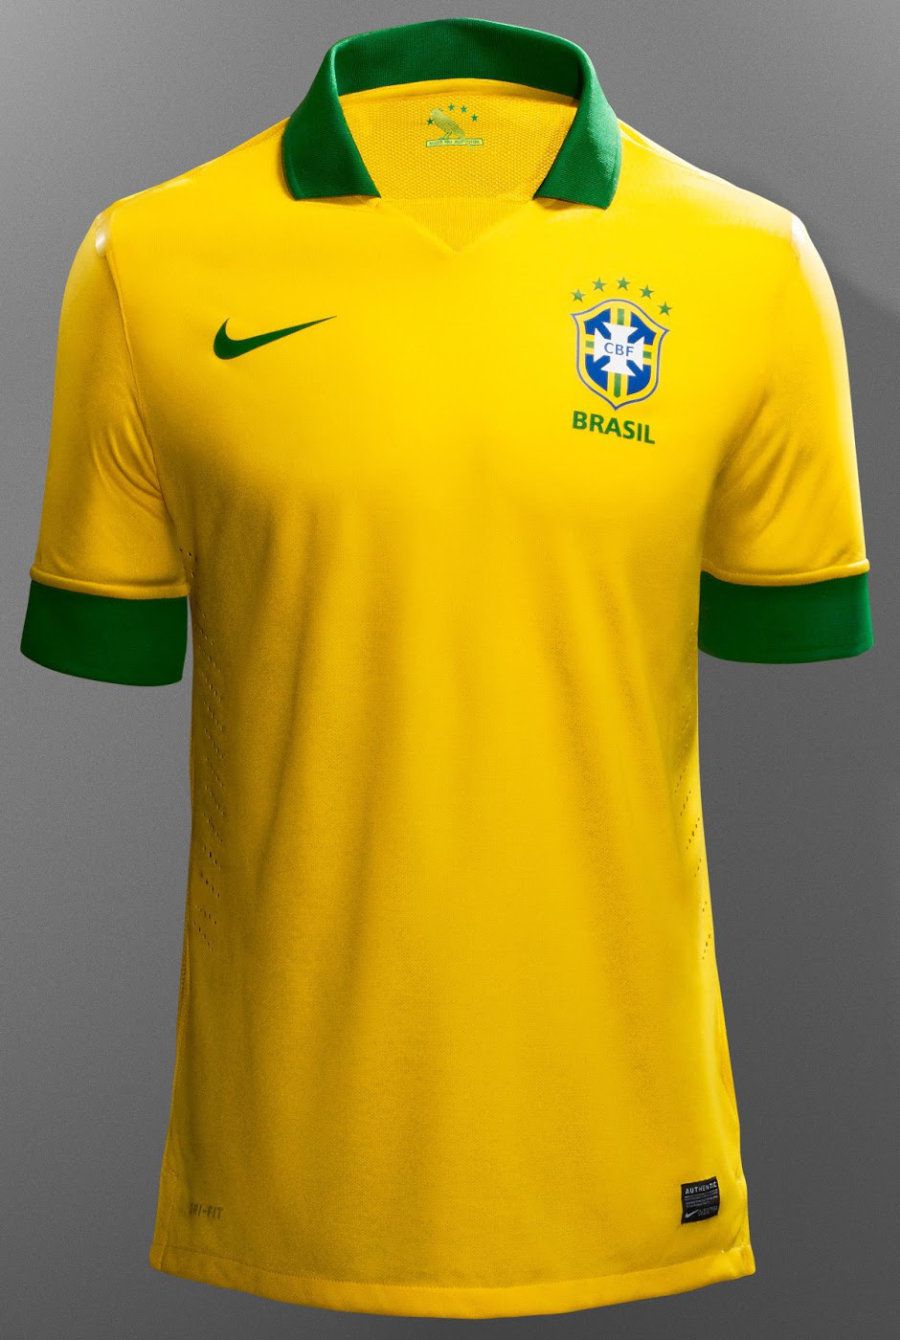 ブラジル 代表 の ユニフォーム